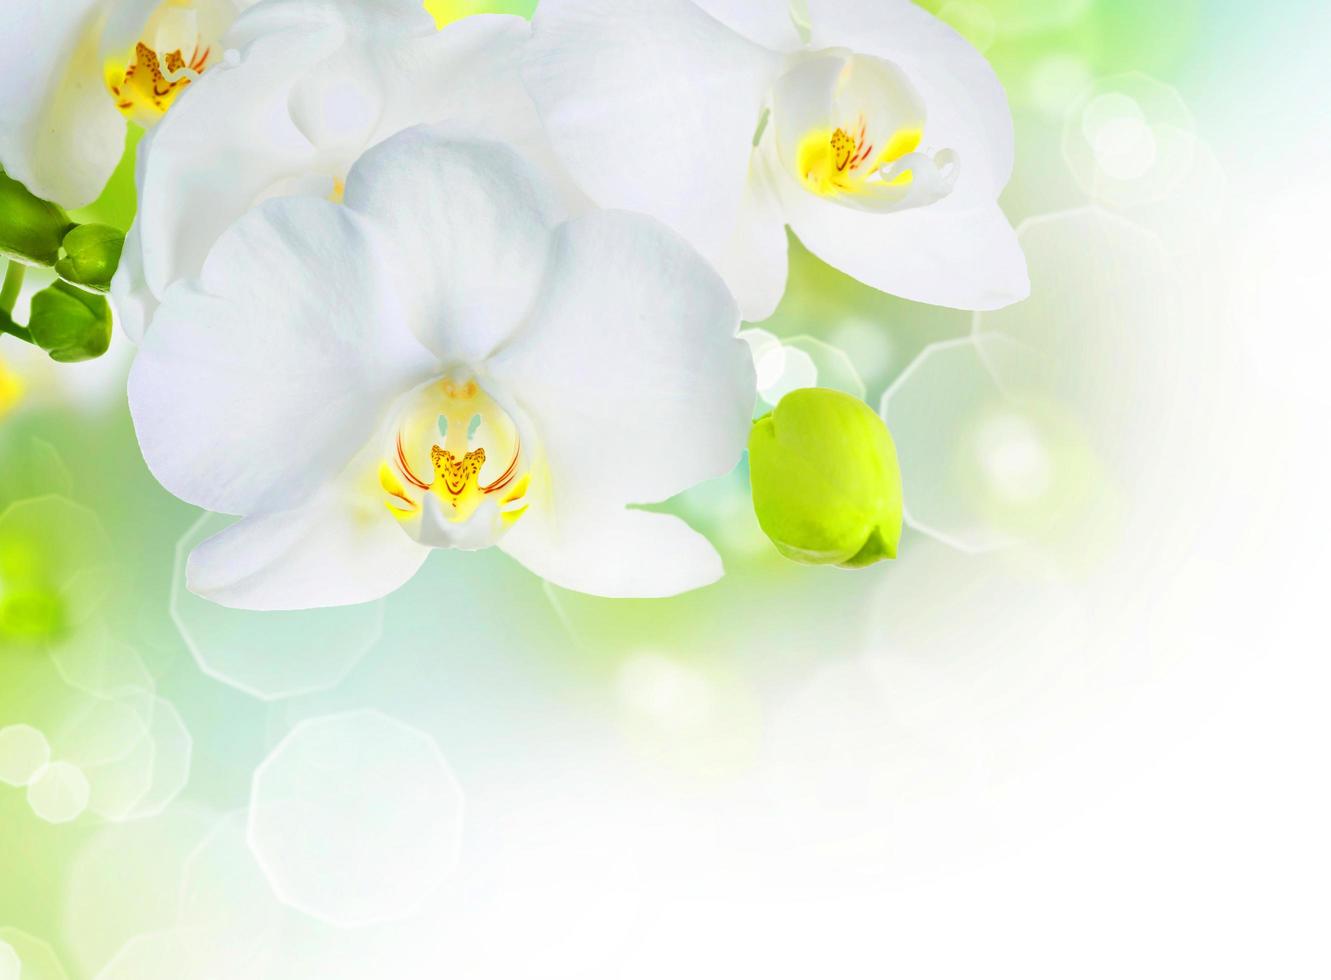 Orquídea blanca clara hermosa flor y mariposas revoloteando rama dibujada a mano en blanco foto